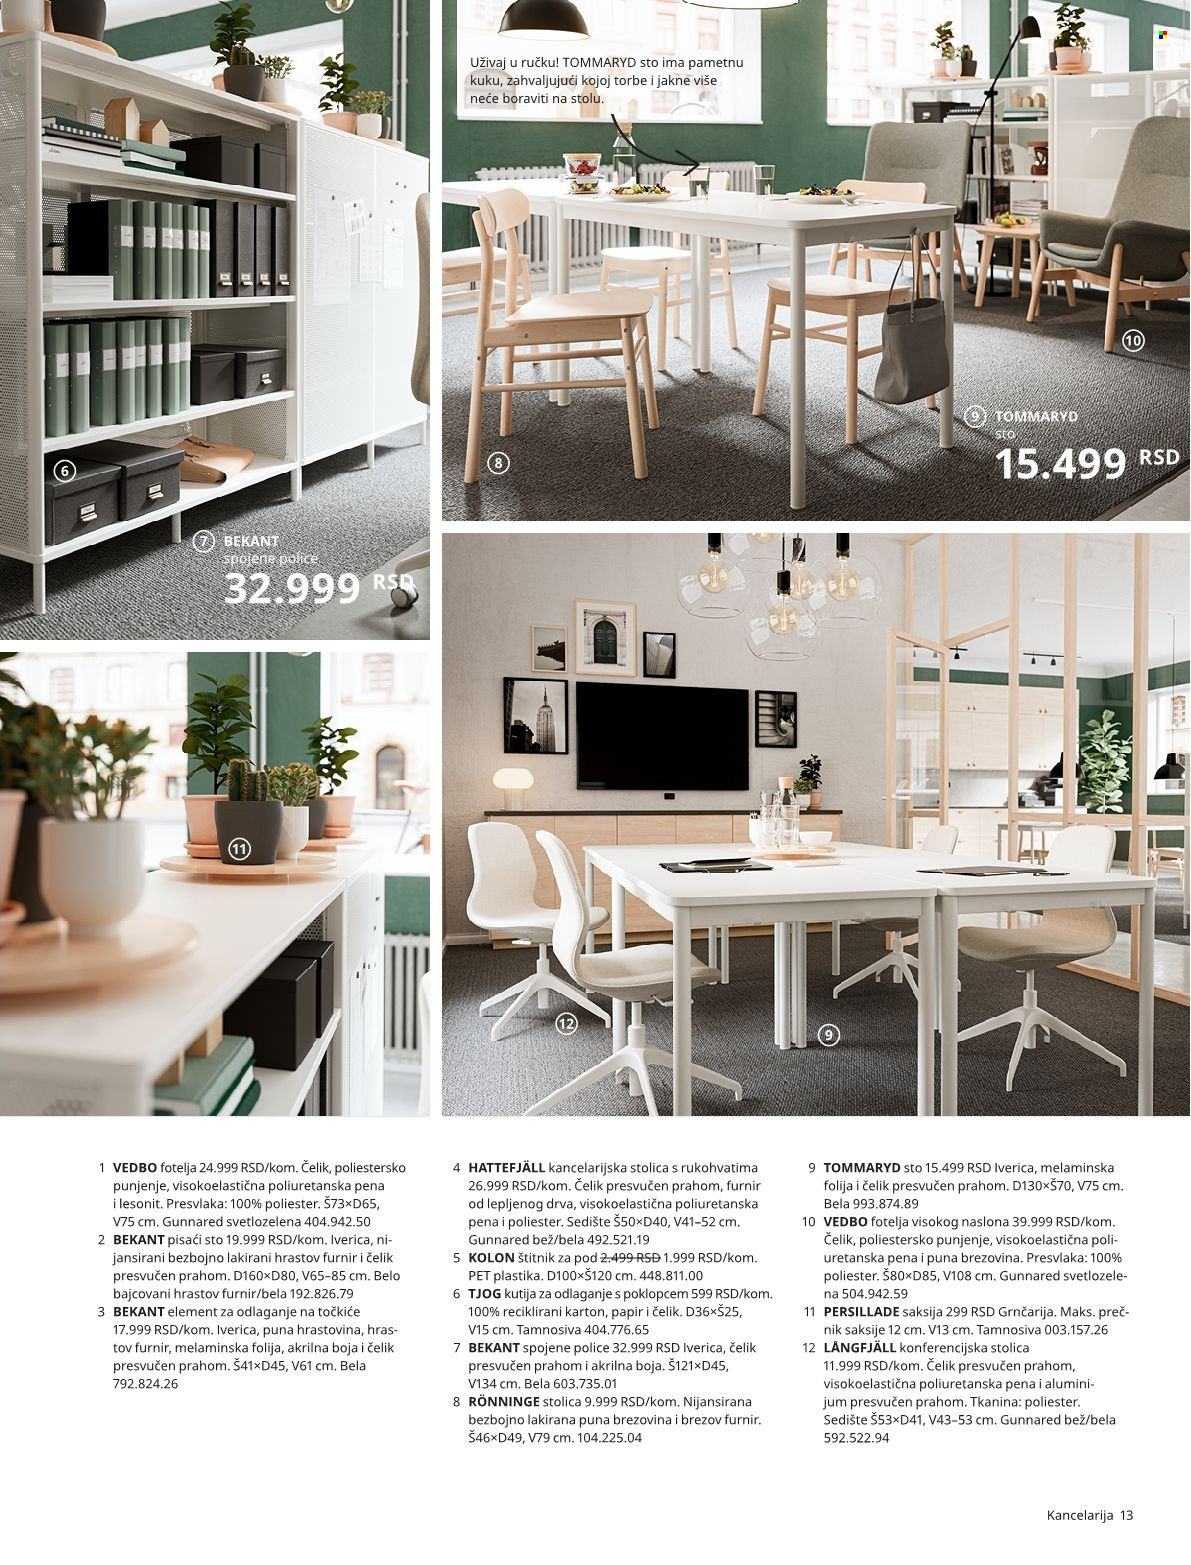 thumbnail - IKEA katalog - Proizvodi na akciji - kutija, aluminijumska folija, karton, polica, sto, stolica, fotelja, pisaći sto, kancelarijska stolica, saksija. Stranica 13.